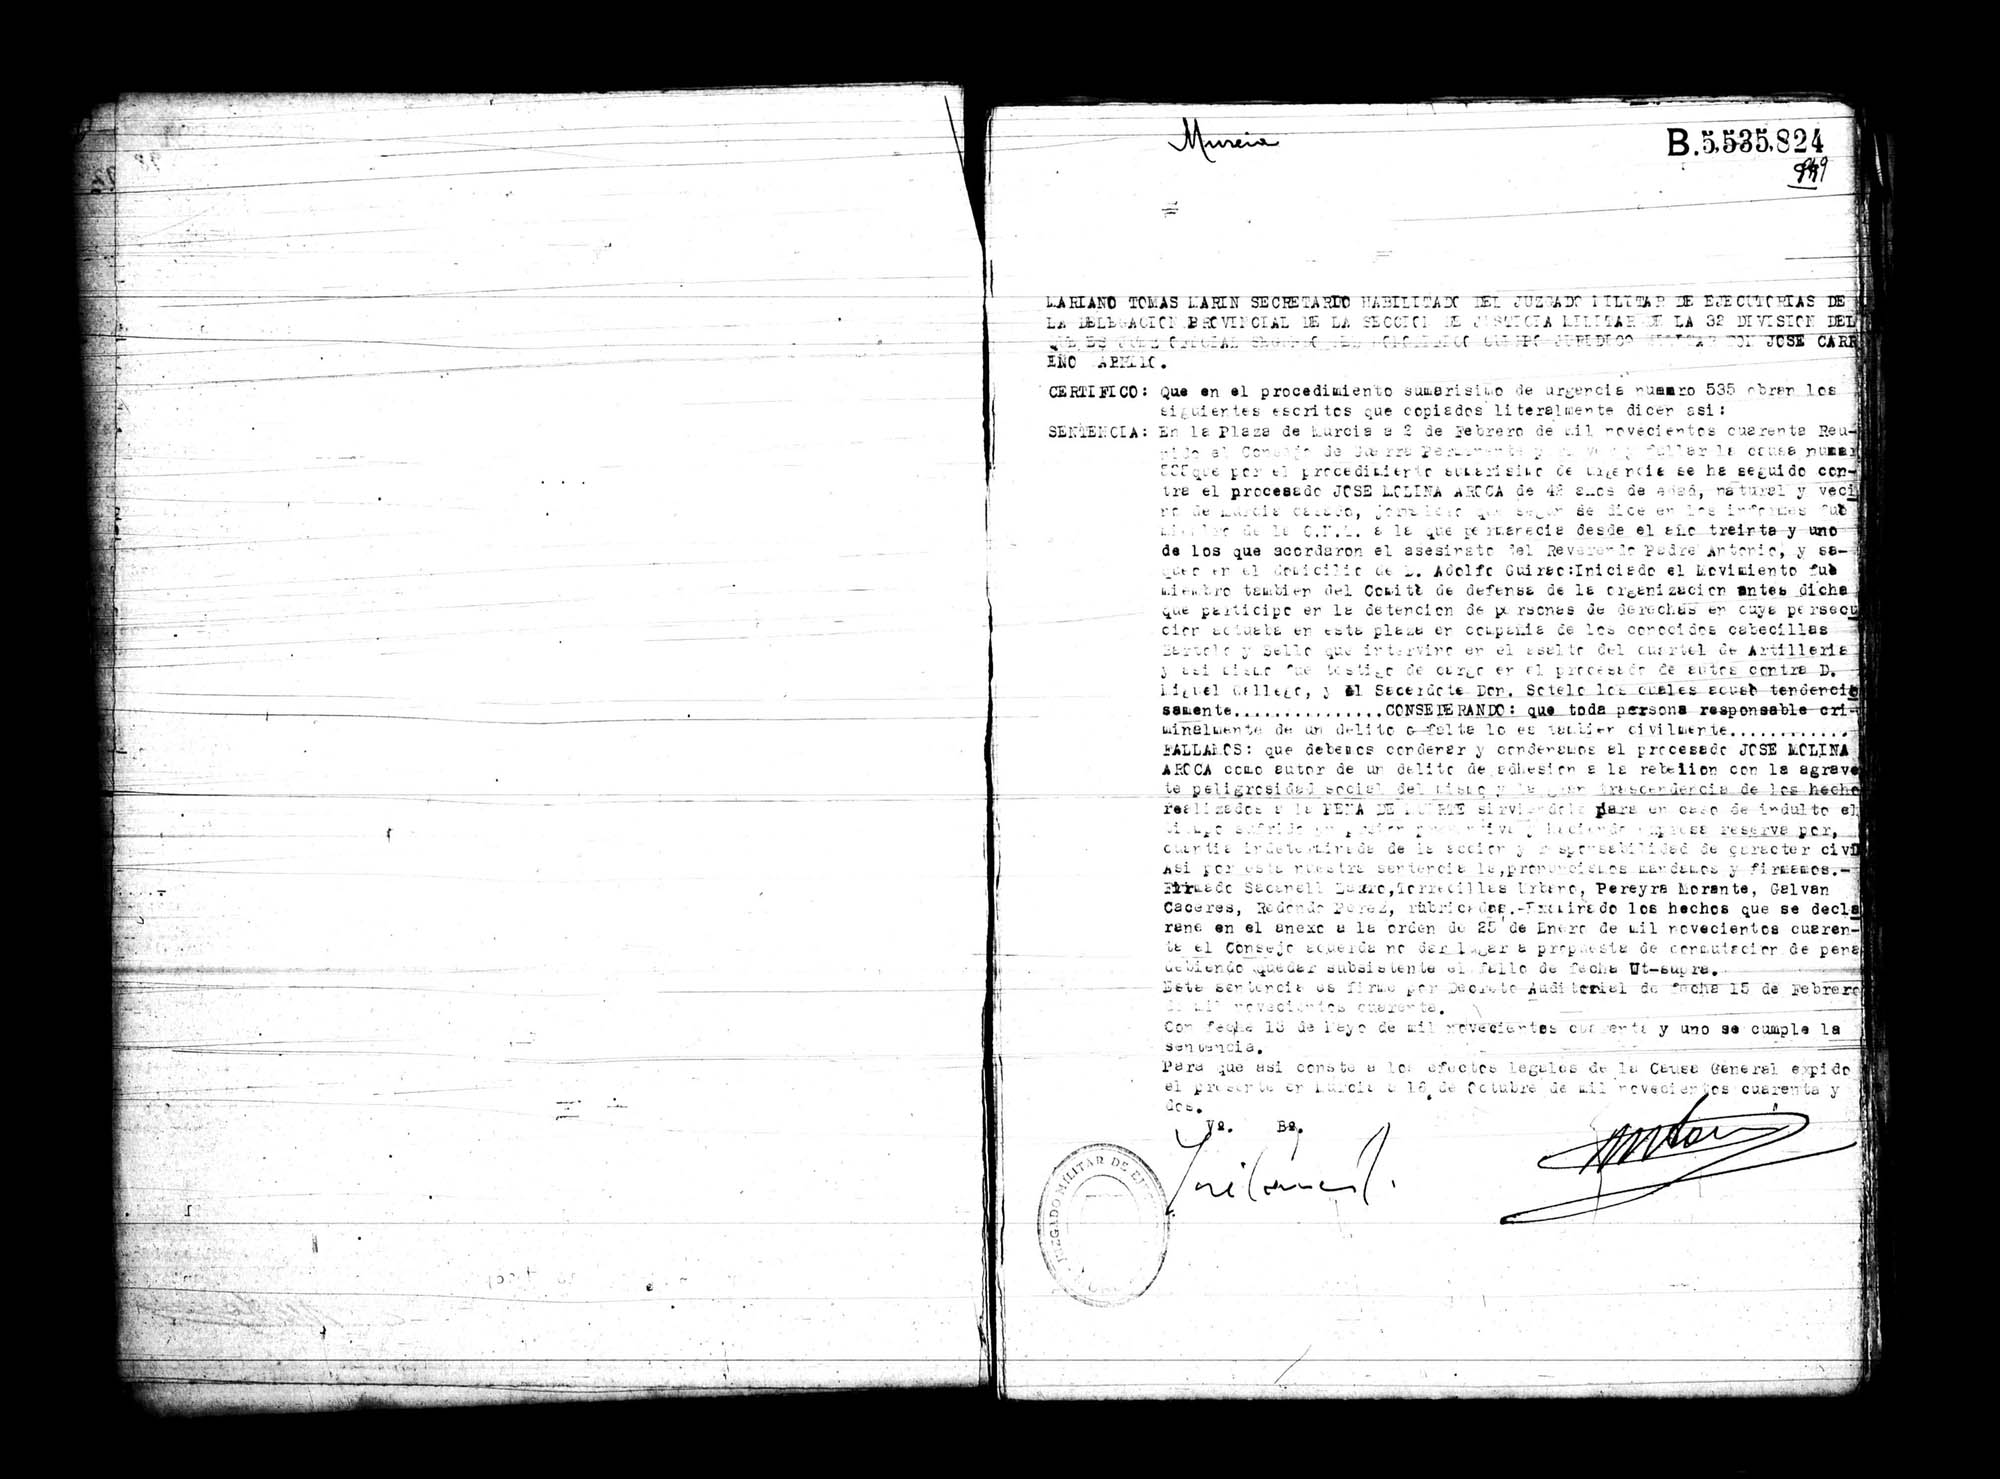 Certificado de la sentencia pronunciada contra José Molina Aroca, causa 535, el 2 de febrero de 1940 en Murcia.